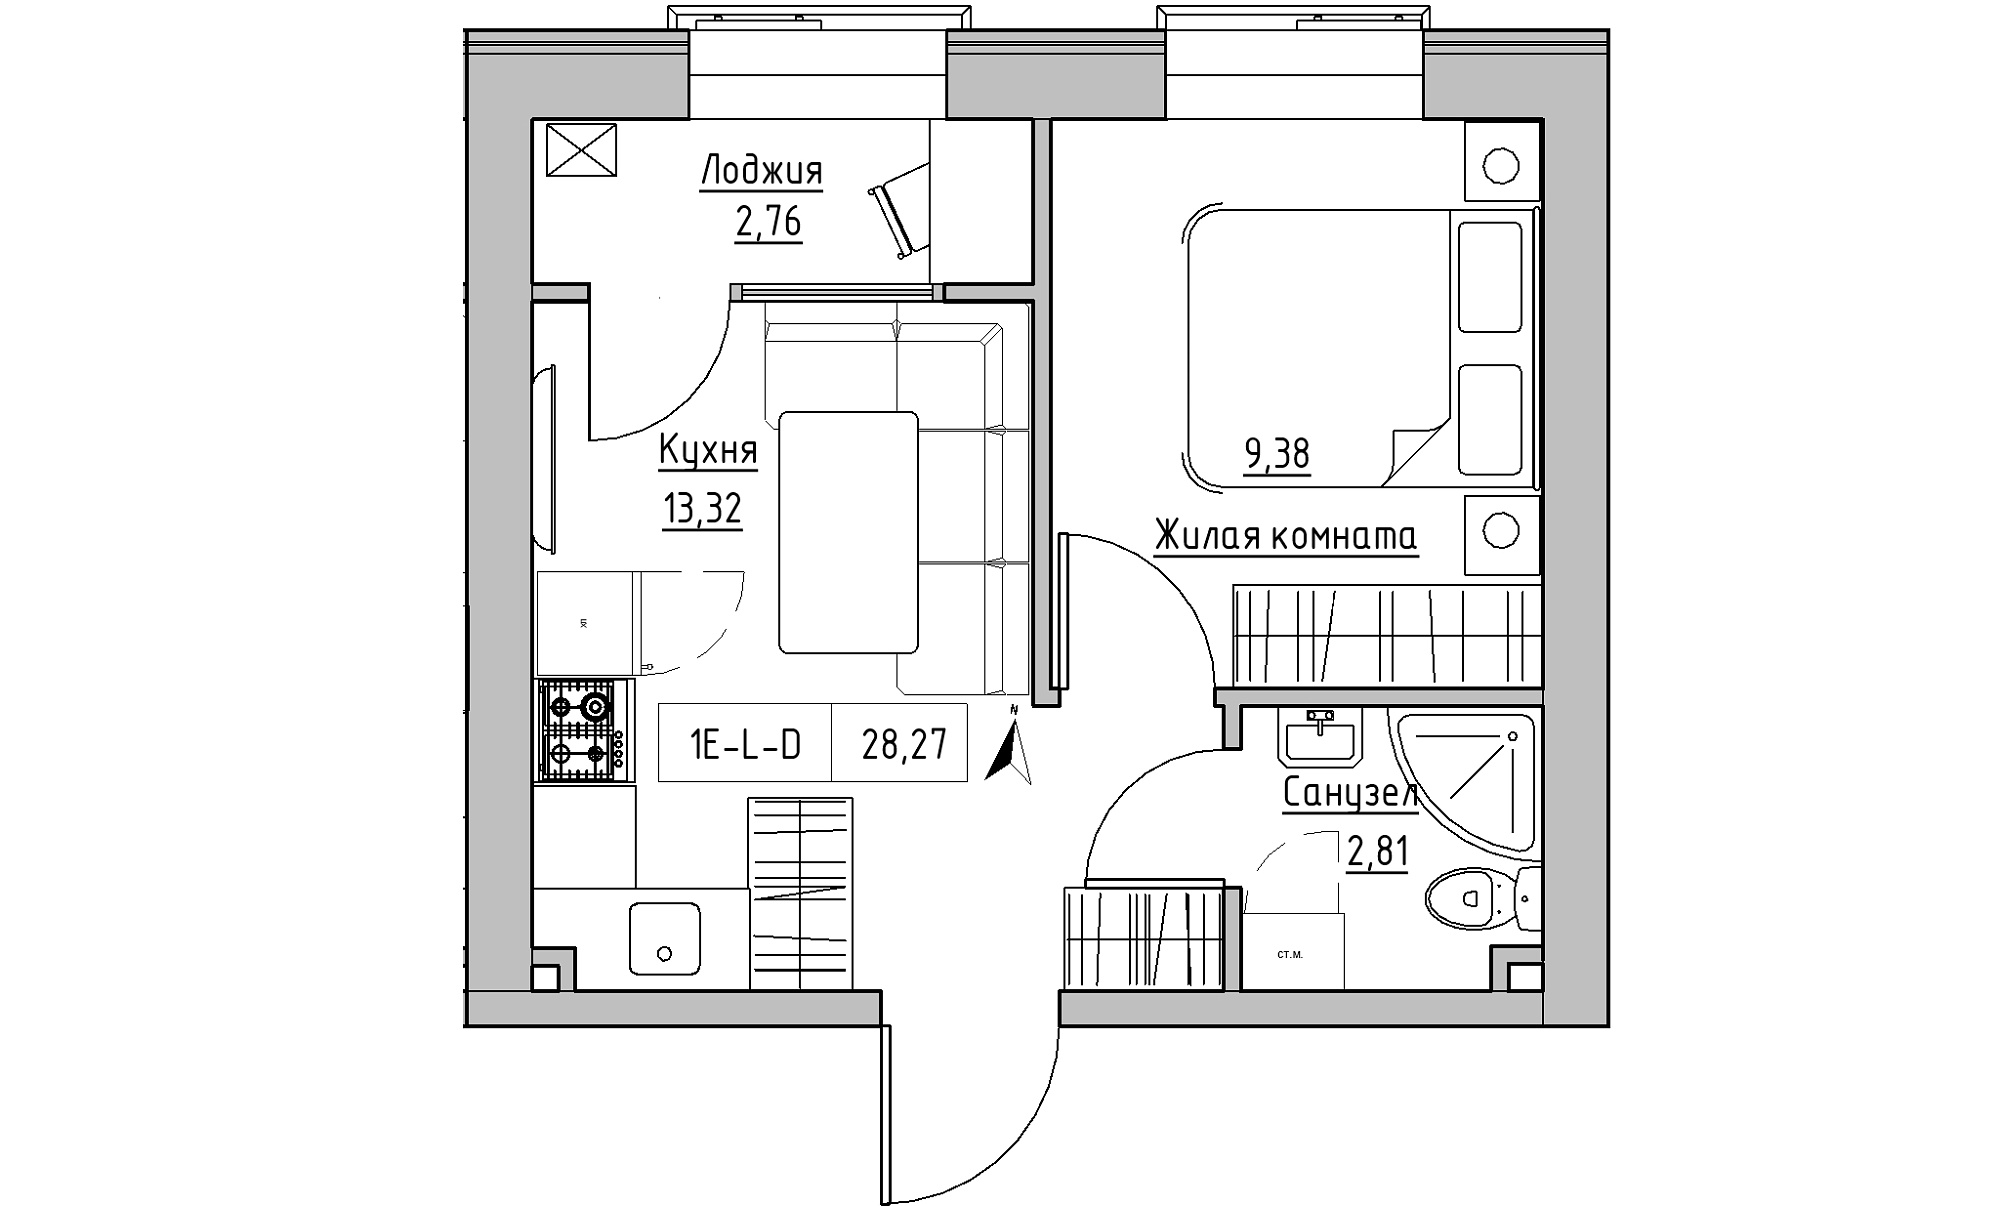 Планировка 1-к квартира площей 28.27м2, KS-023-02/0017.